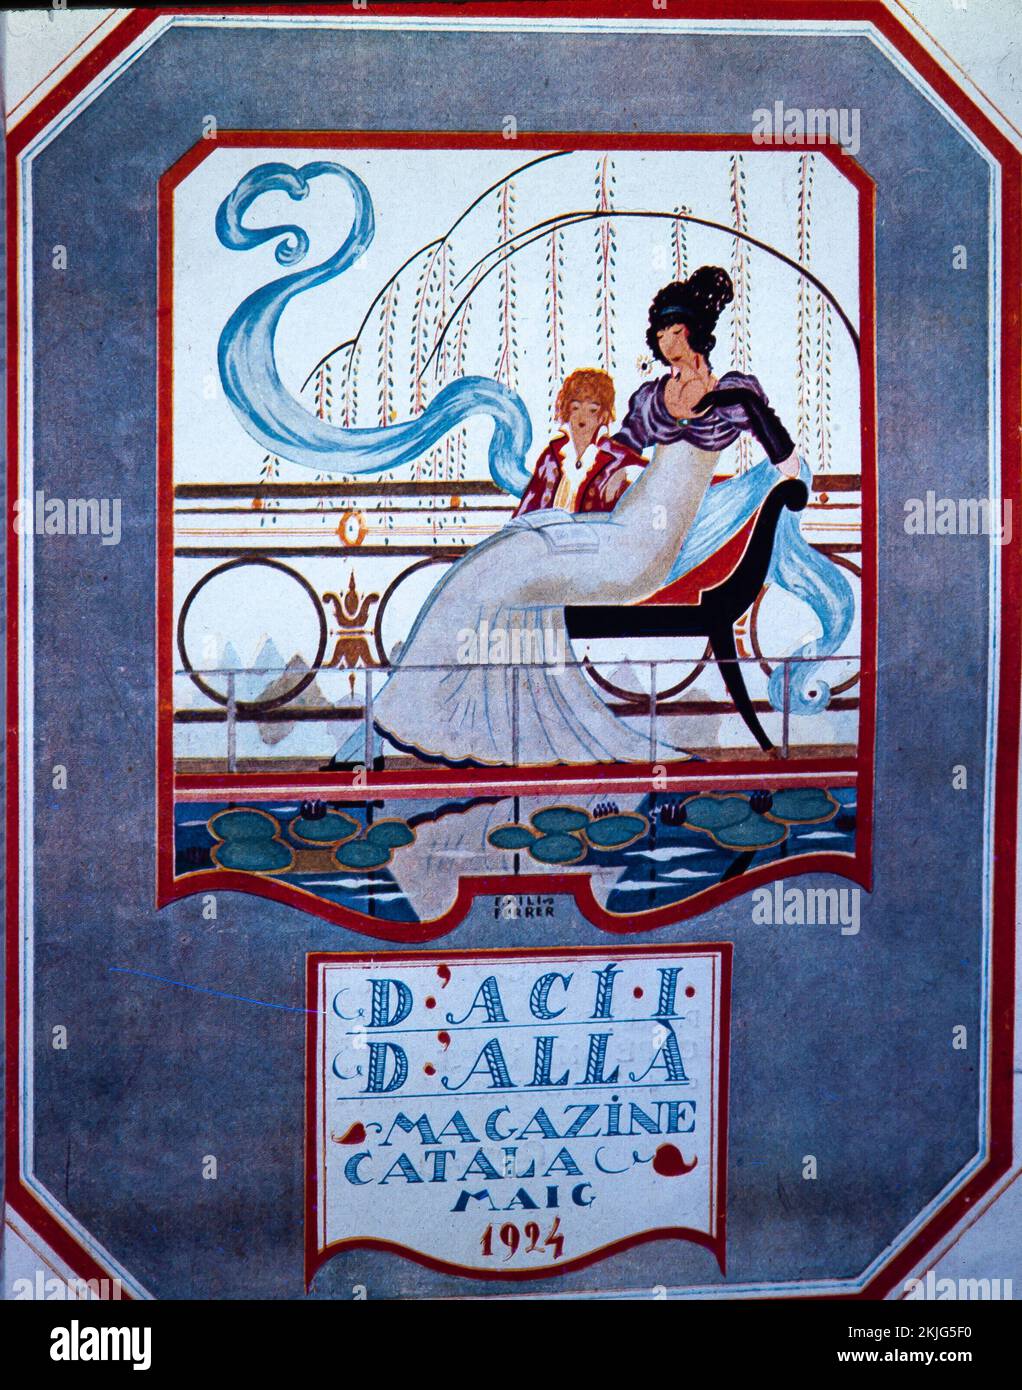 PORTADADACI D'ALLA, Mayo 1924, siglo XX. Colección privada. Stockfoto